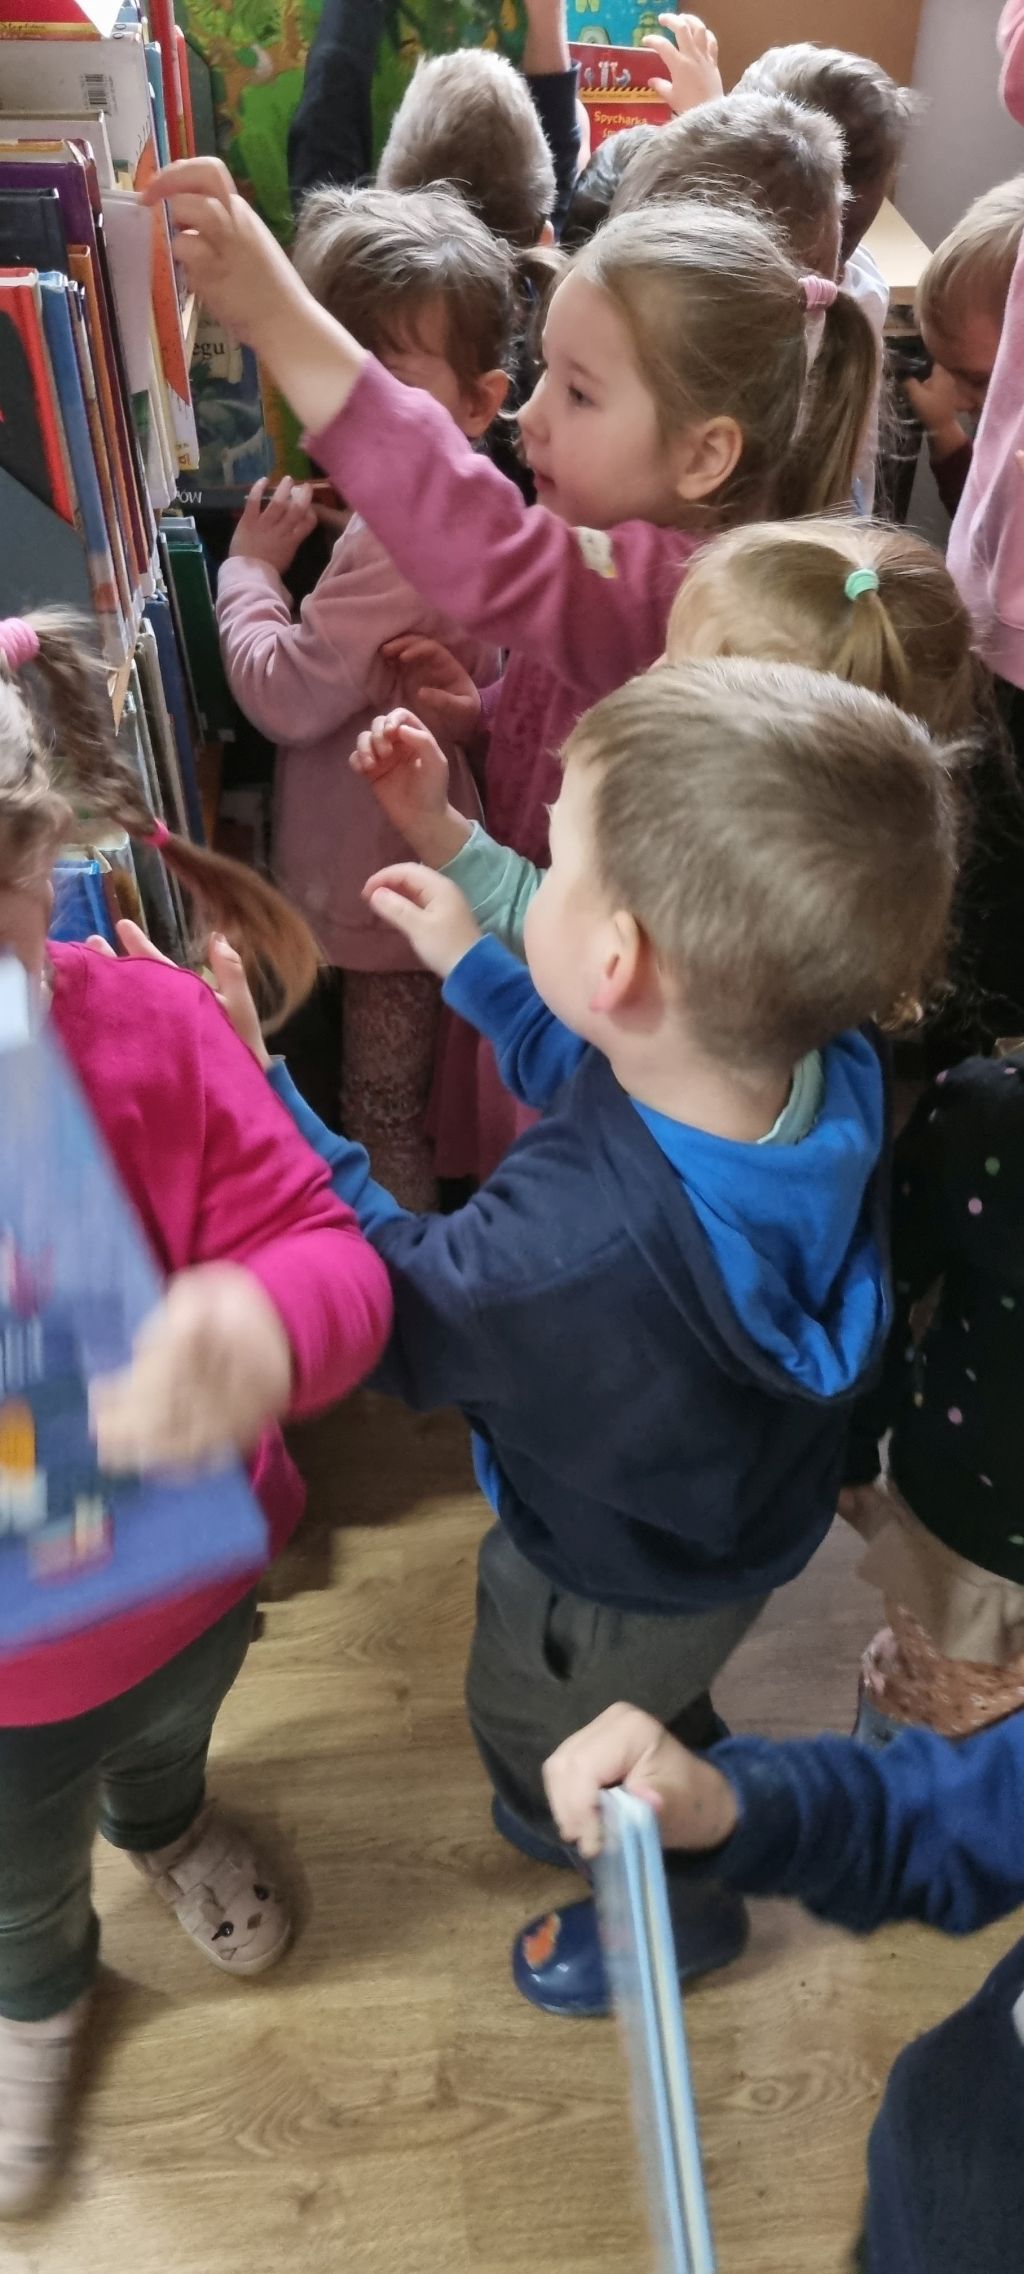 Czterolatki zwiedzają kącik dla dzieci. Zdjęcie jest odnośnikiem do wpisu "Bajka o kolorach jesieni".